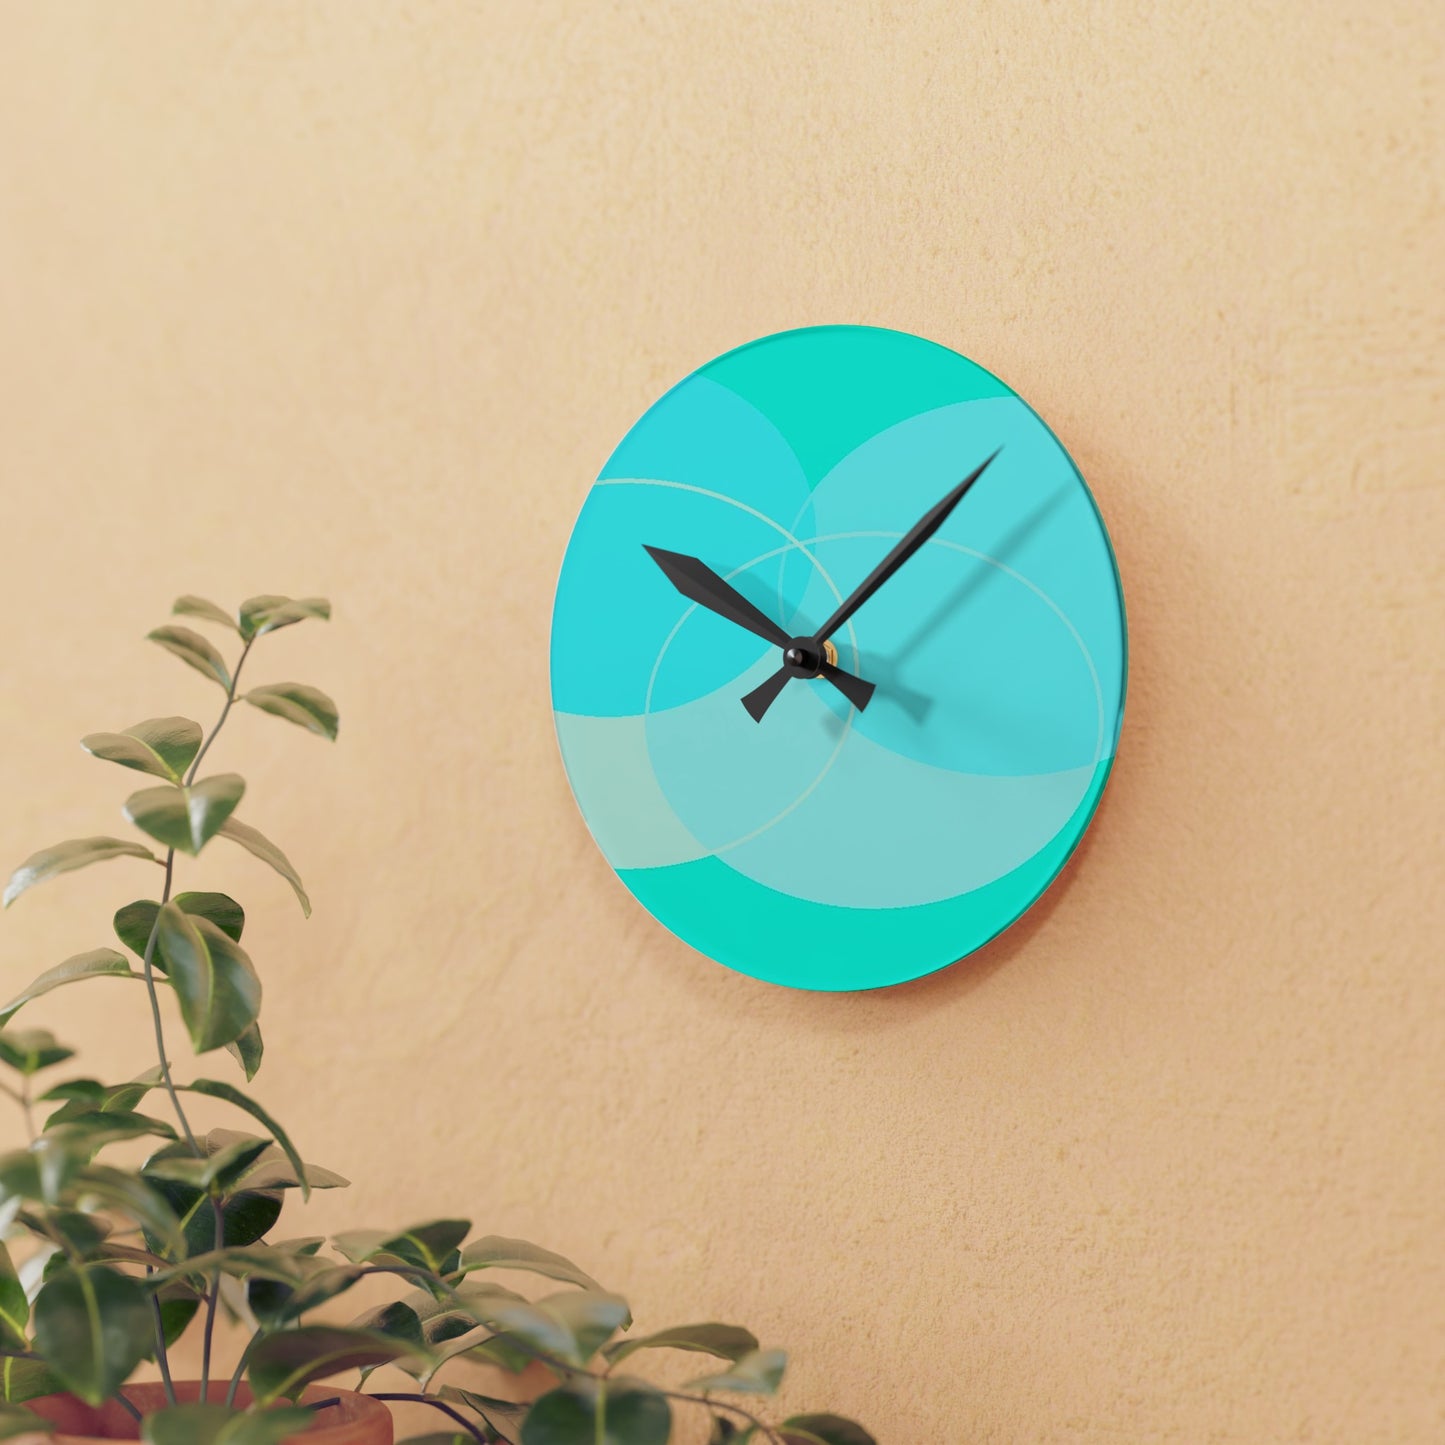 Teal Circles Acrylic Wall Clock